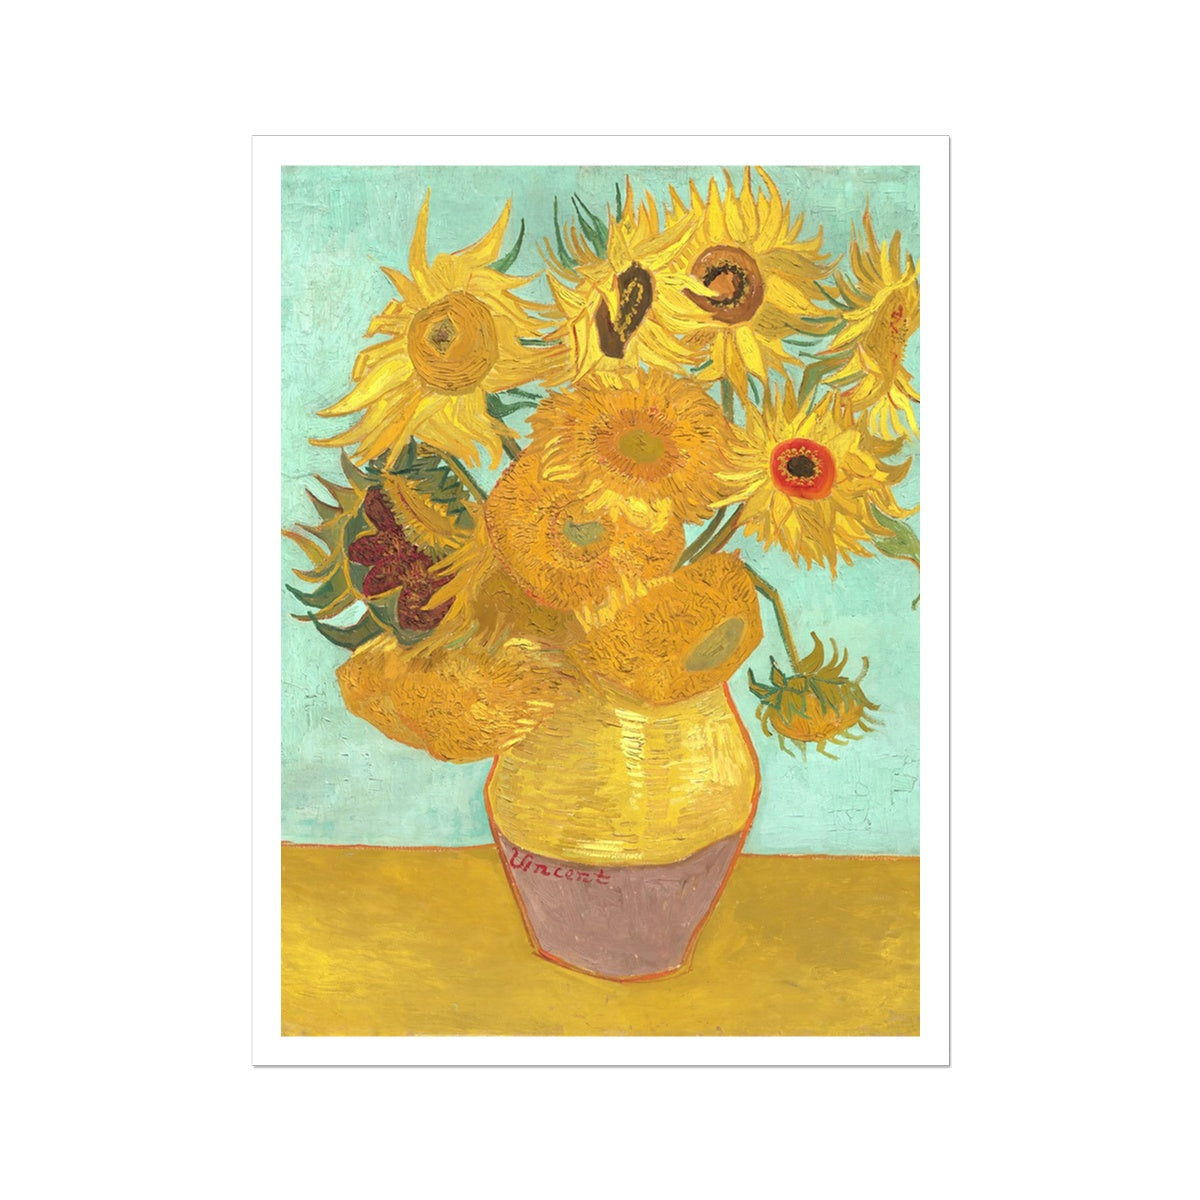 'Sunflowers' by Vincent Van Gogh. Garden Flowers Still Life Open Edition Art Print. Art Gallery Historic Art